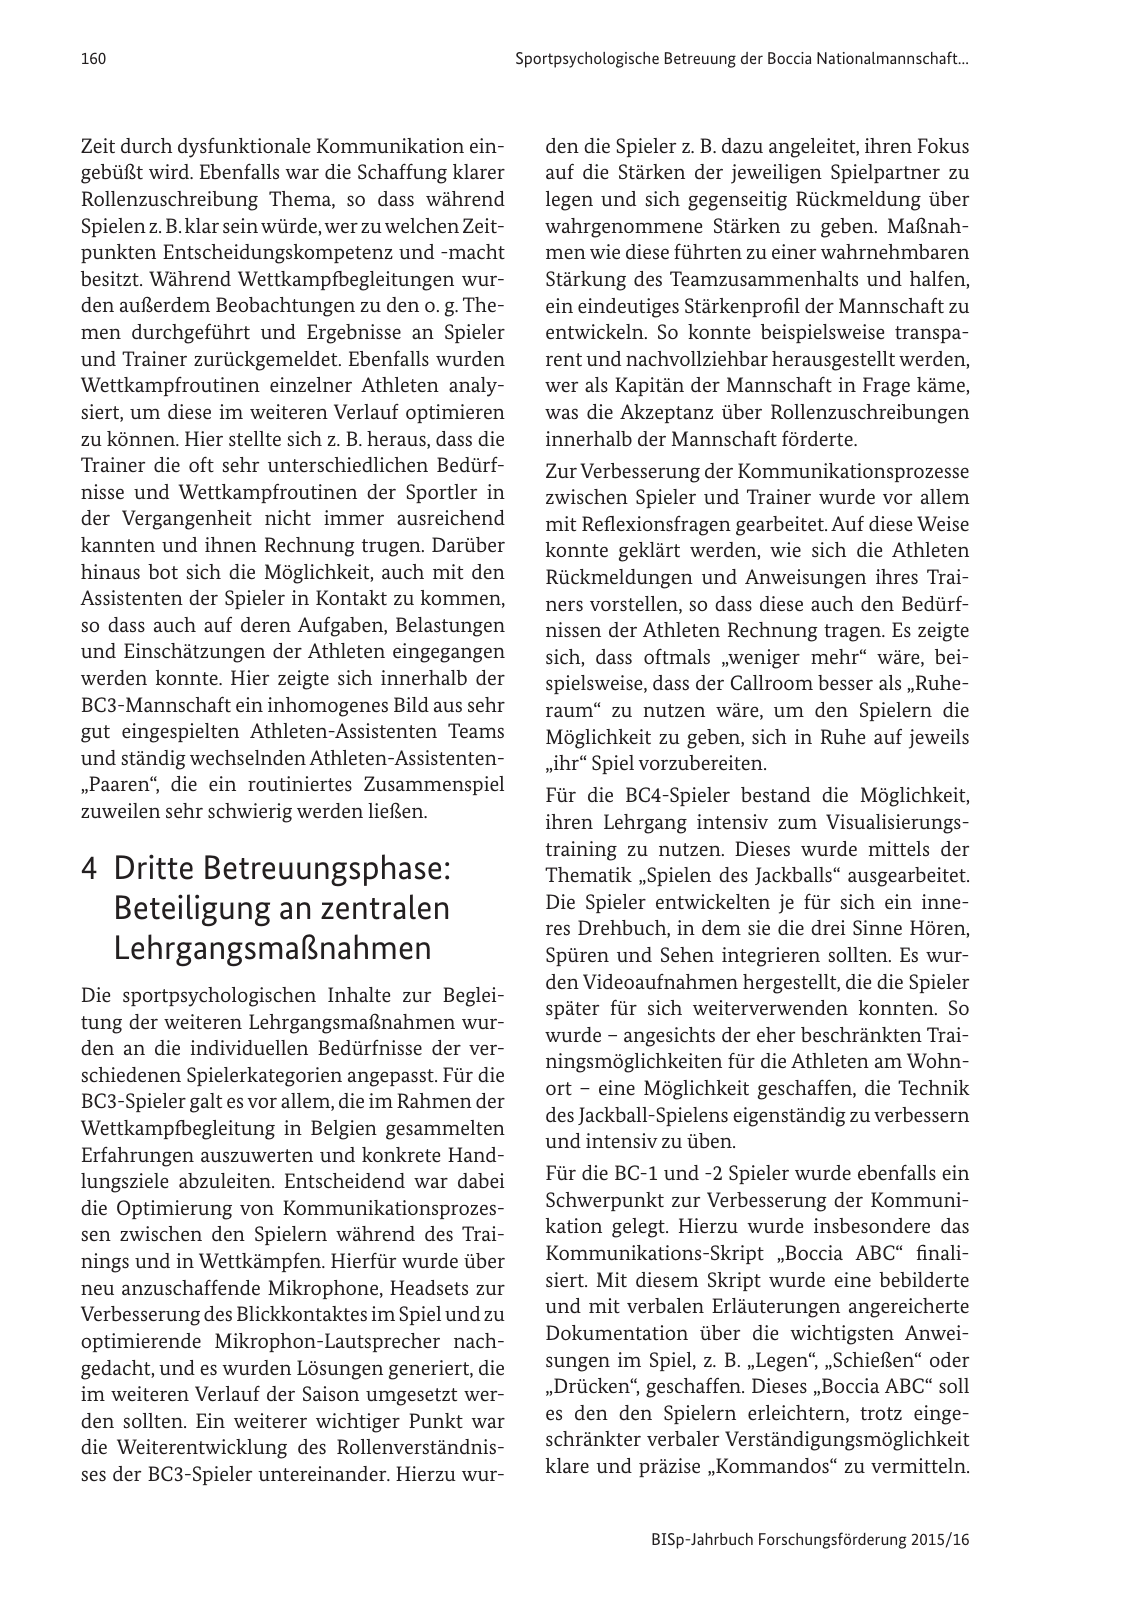 Vorschau BISp-Jahrbuch Forschungsförderung 2015/16 Seite 162